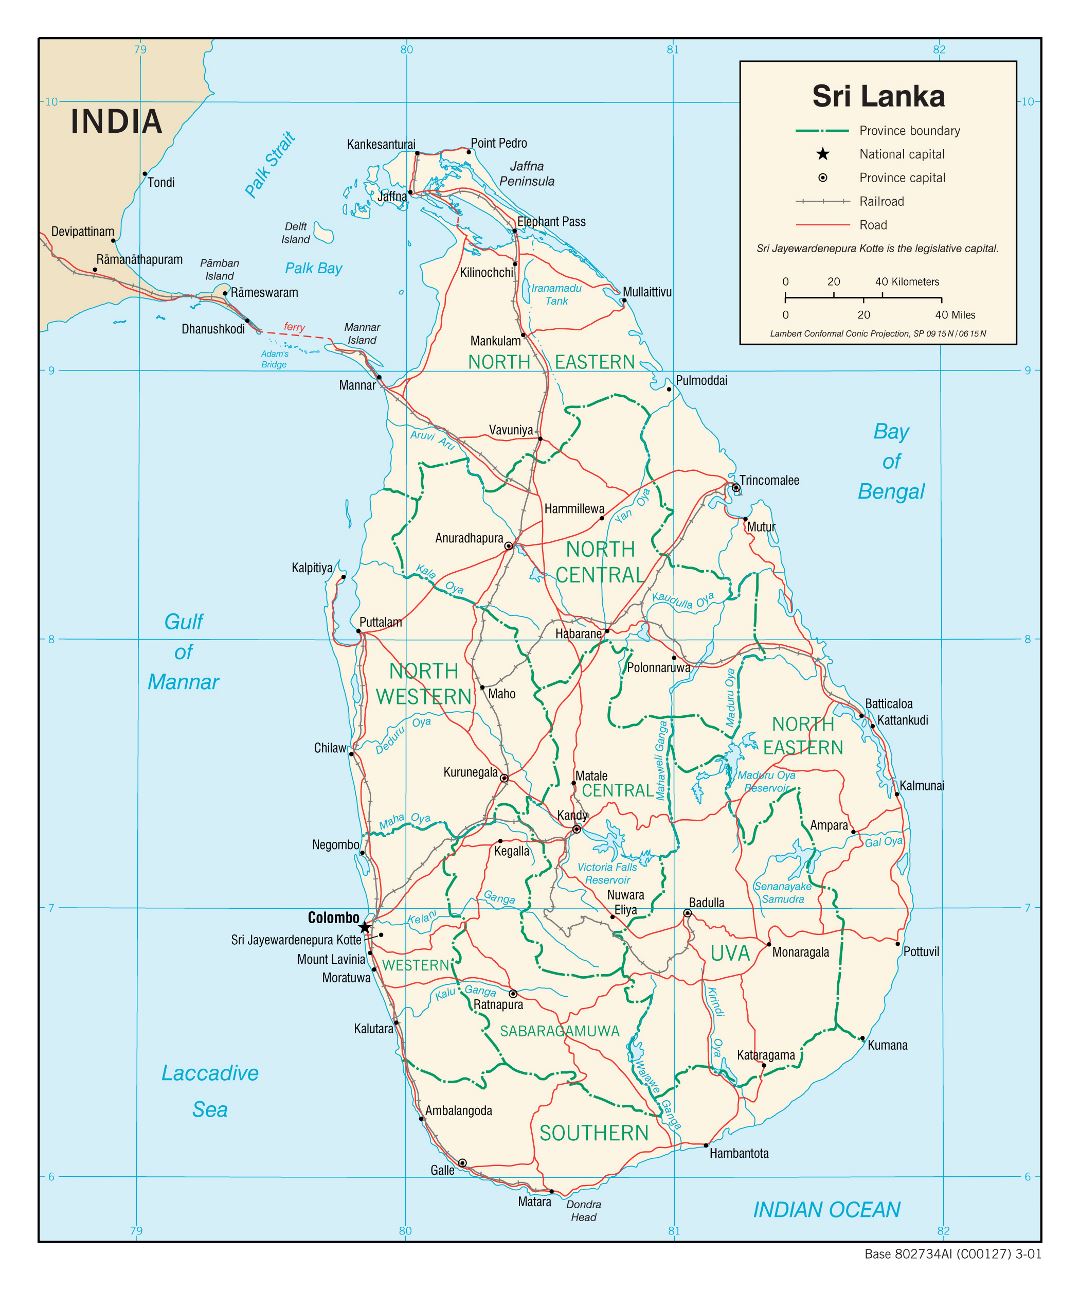 Grande mapa político y administrativo de Sri Lanka con carreteras, ferrocarriles y principales ciudades - 2001